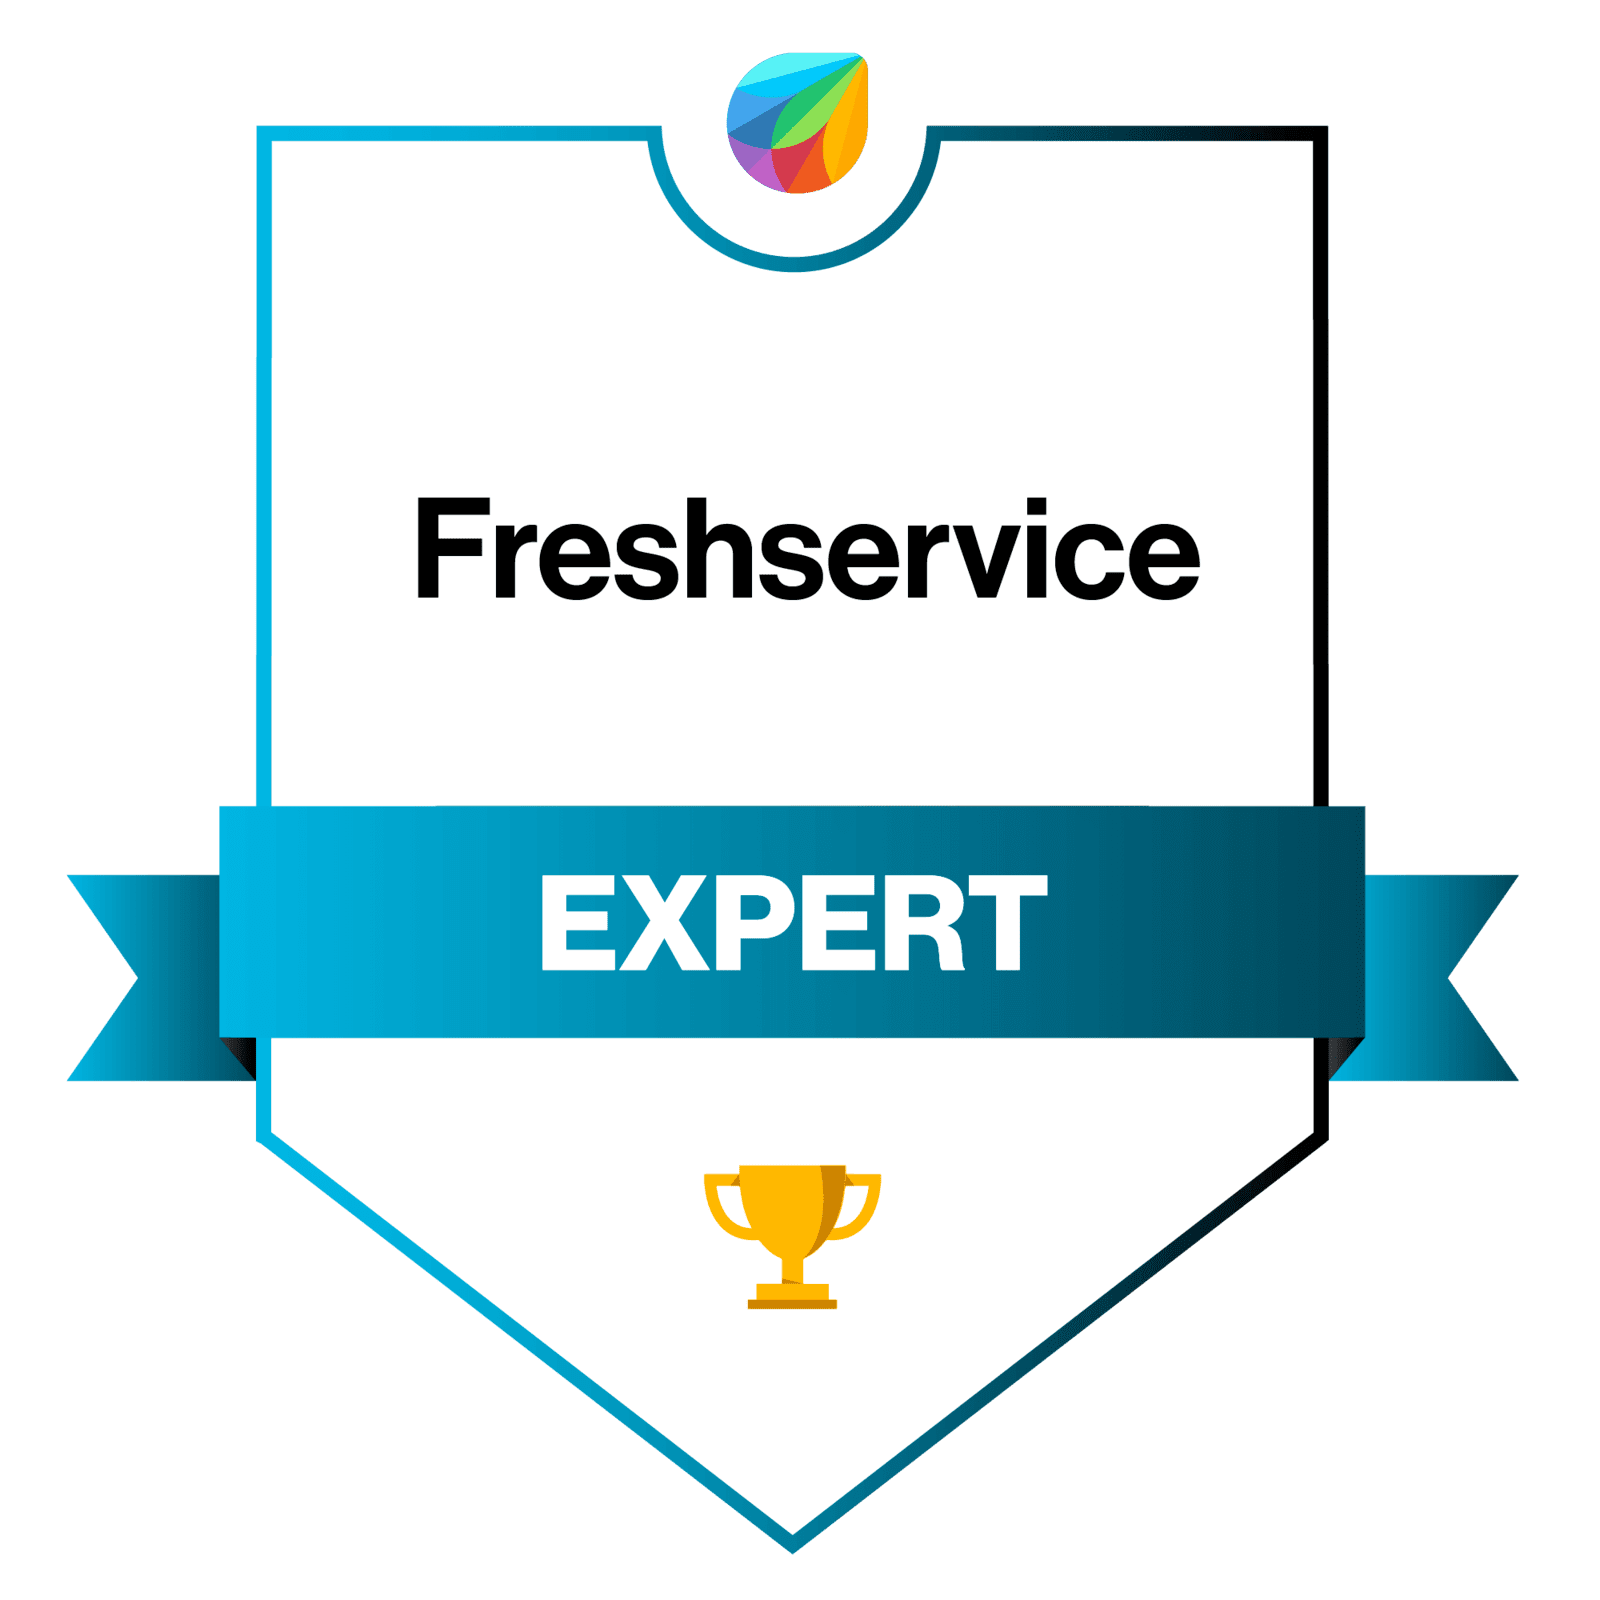 Partner freshservice expert certification